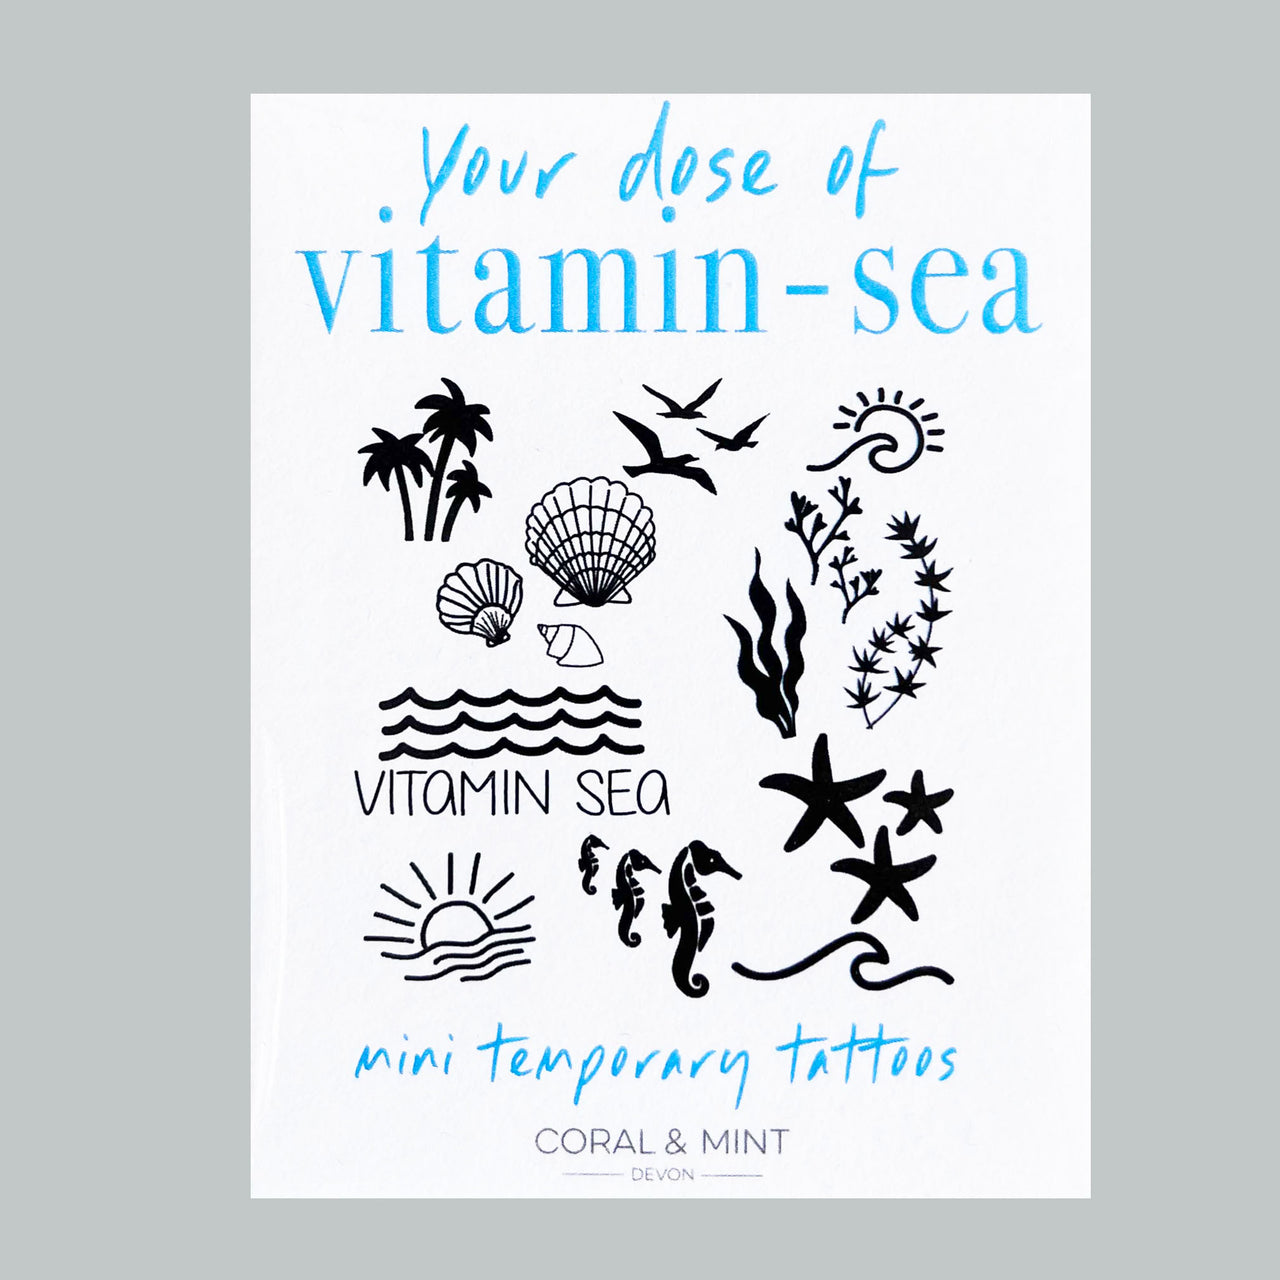 Vitamin Sea Tattoos